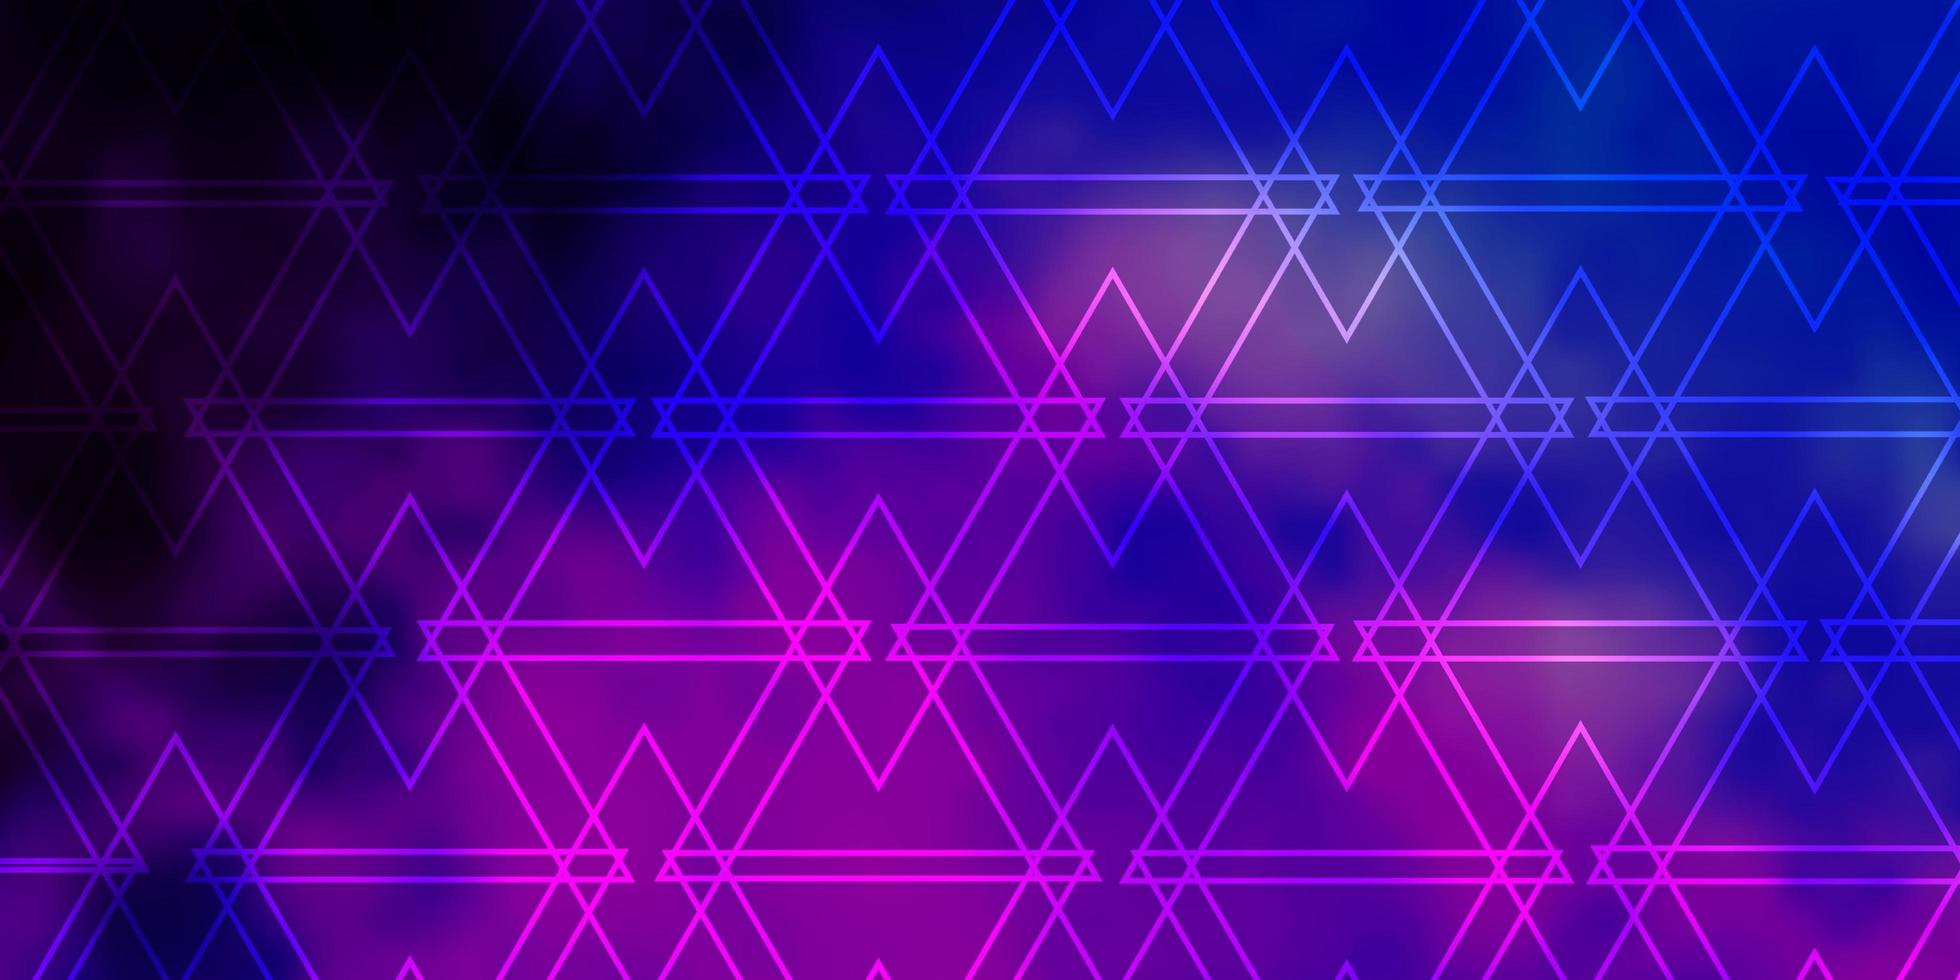 sfondo vettoriale rosa chiaro, blu con linee, triangoli. illustrazione con triangoli sfumati colorati. modello per sfondi.